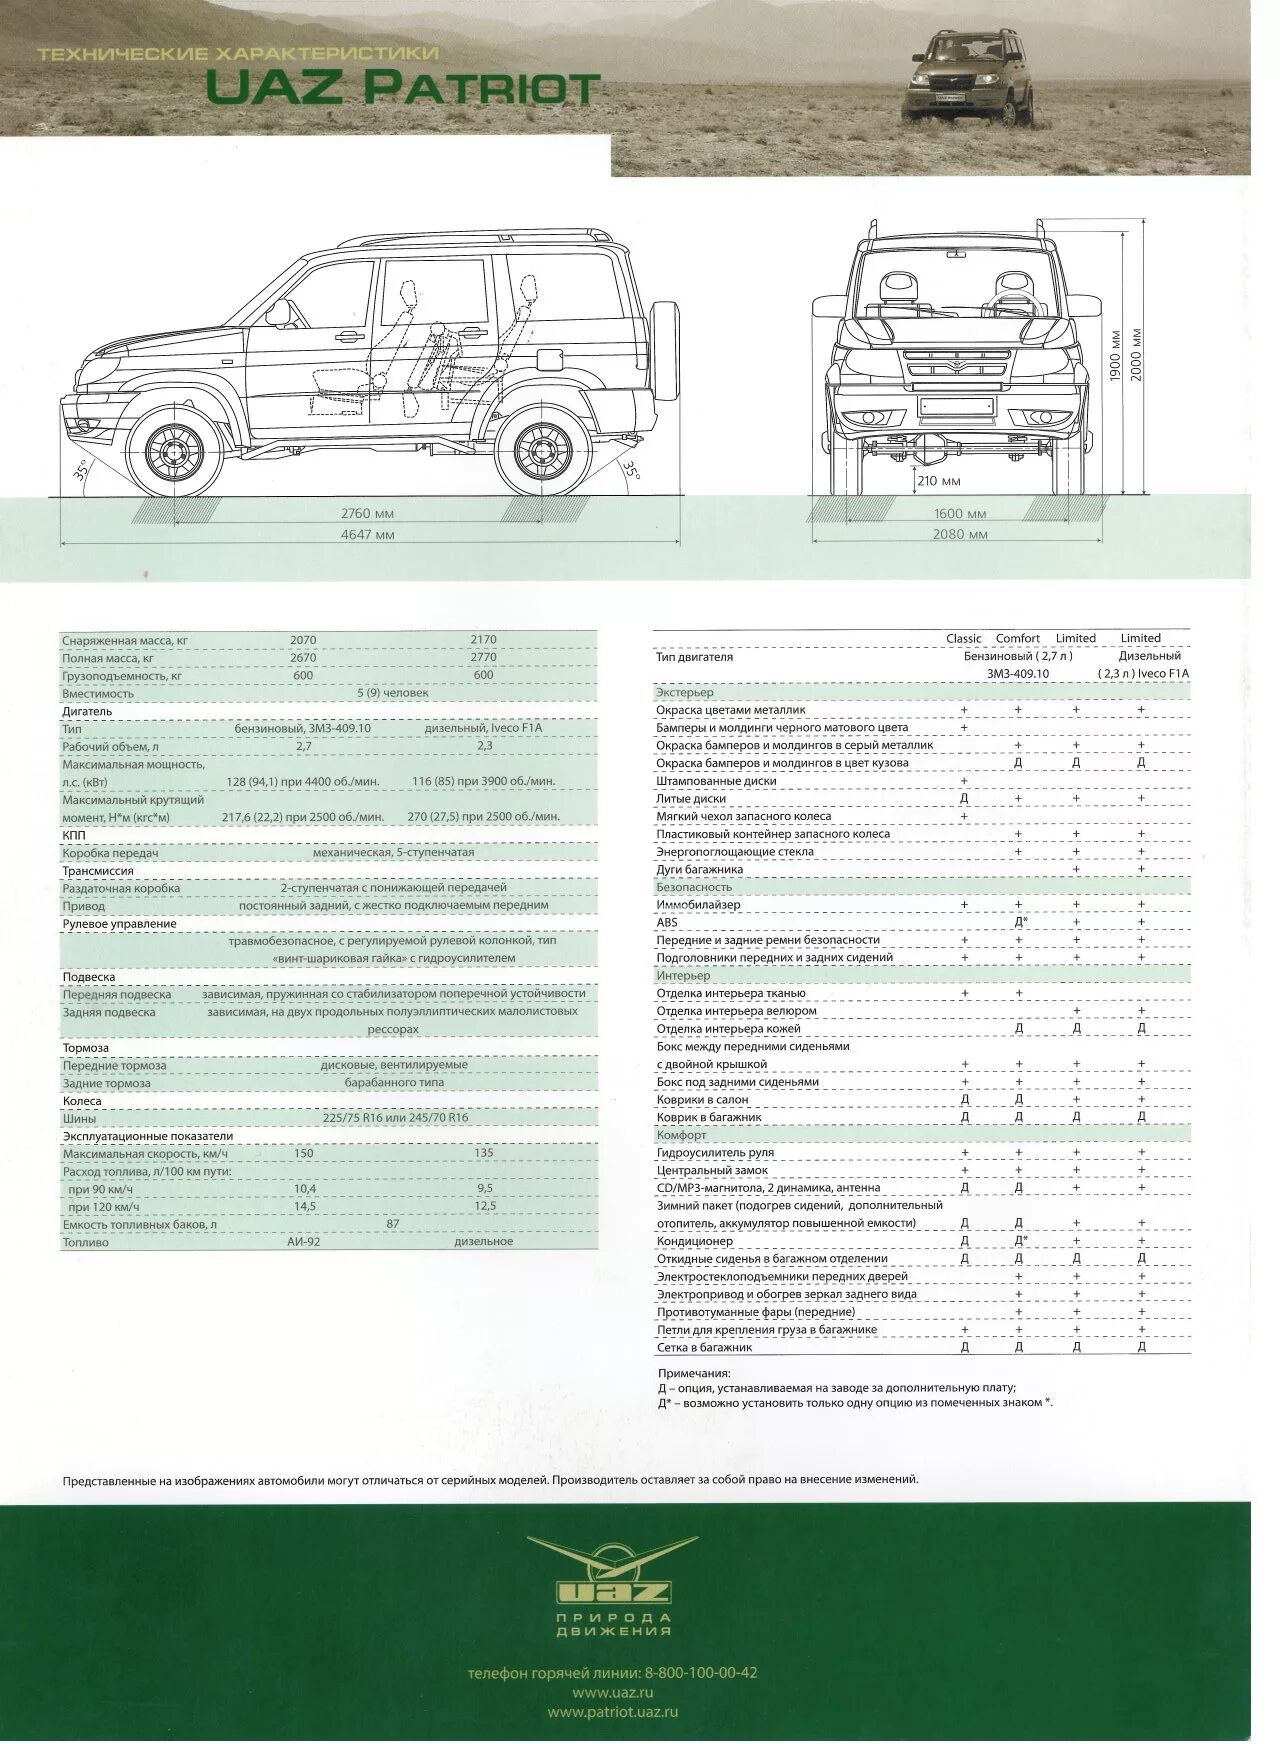 Подробные технические характеристики. УАЗ Патриот техн характеристики. Колесная база УАЗ Патриот. Технические данные УАЗ Патриот пикап. УАЗ-23632 UAZ Pickup габариты.